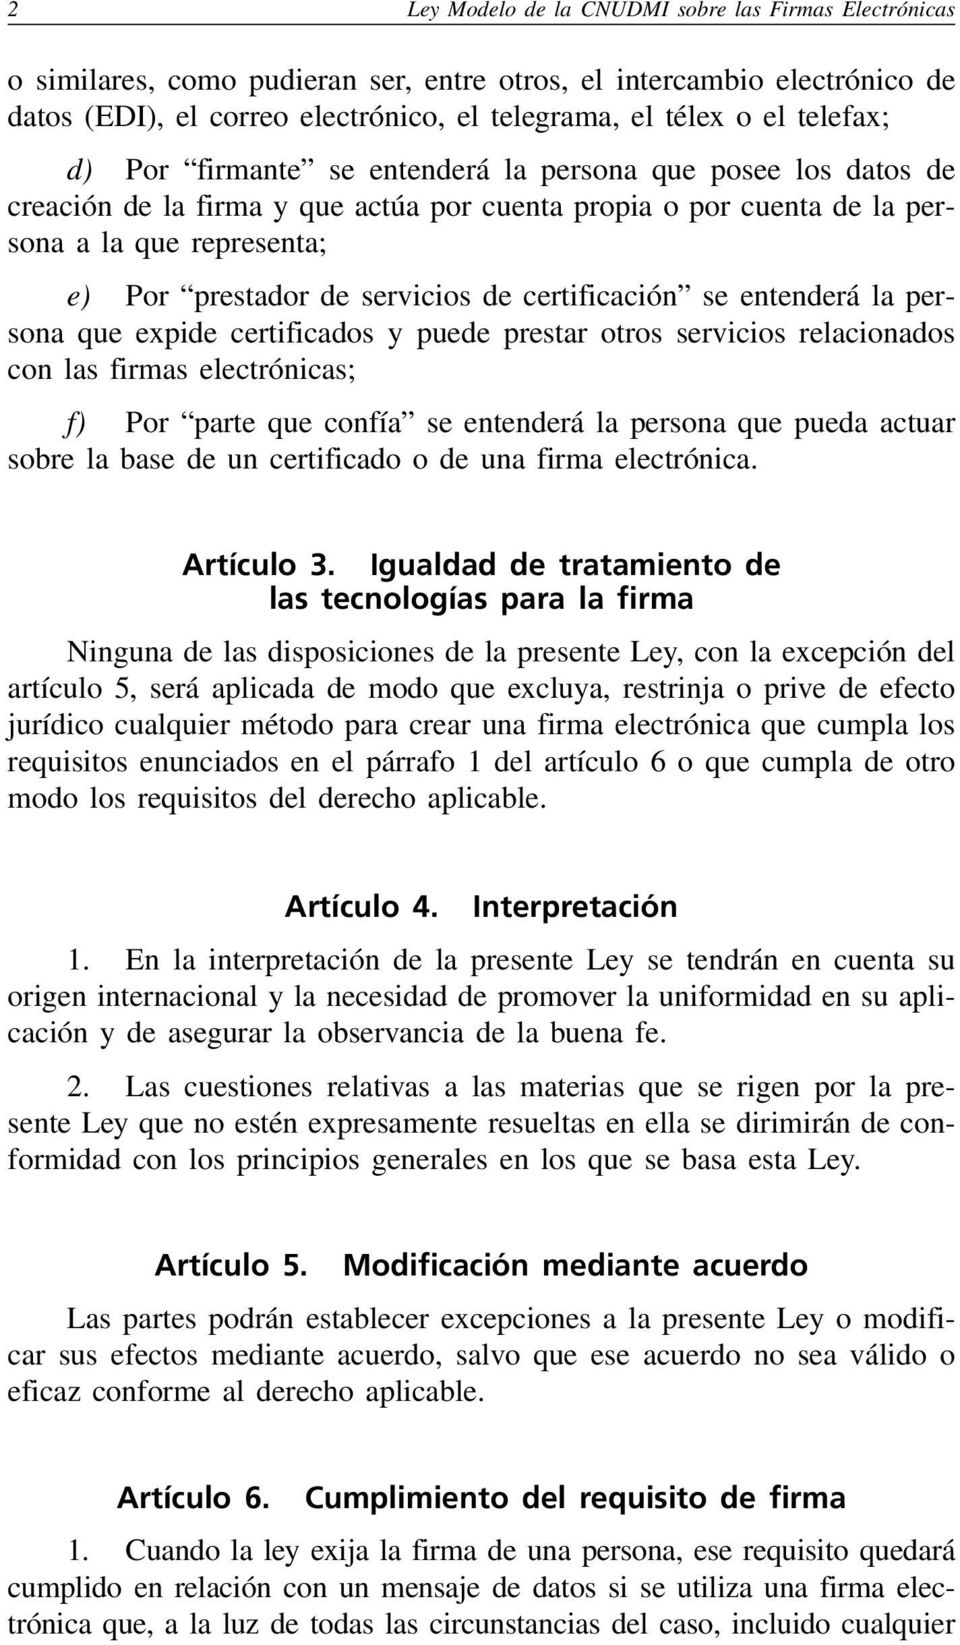 Ley Modelo de la CNUDMI sobre Firmas Electrónicas - PDF Free Download